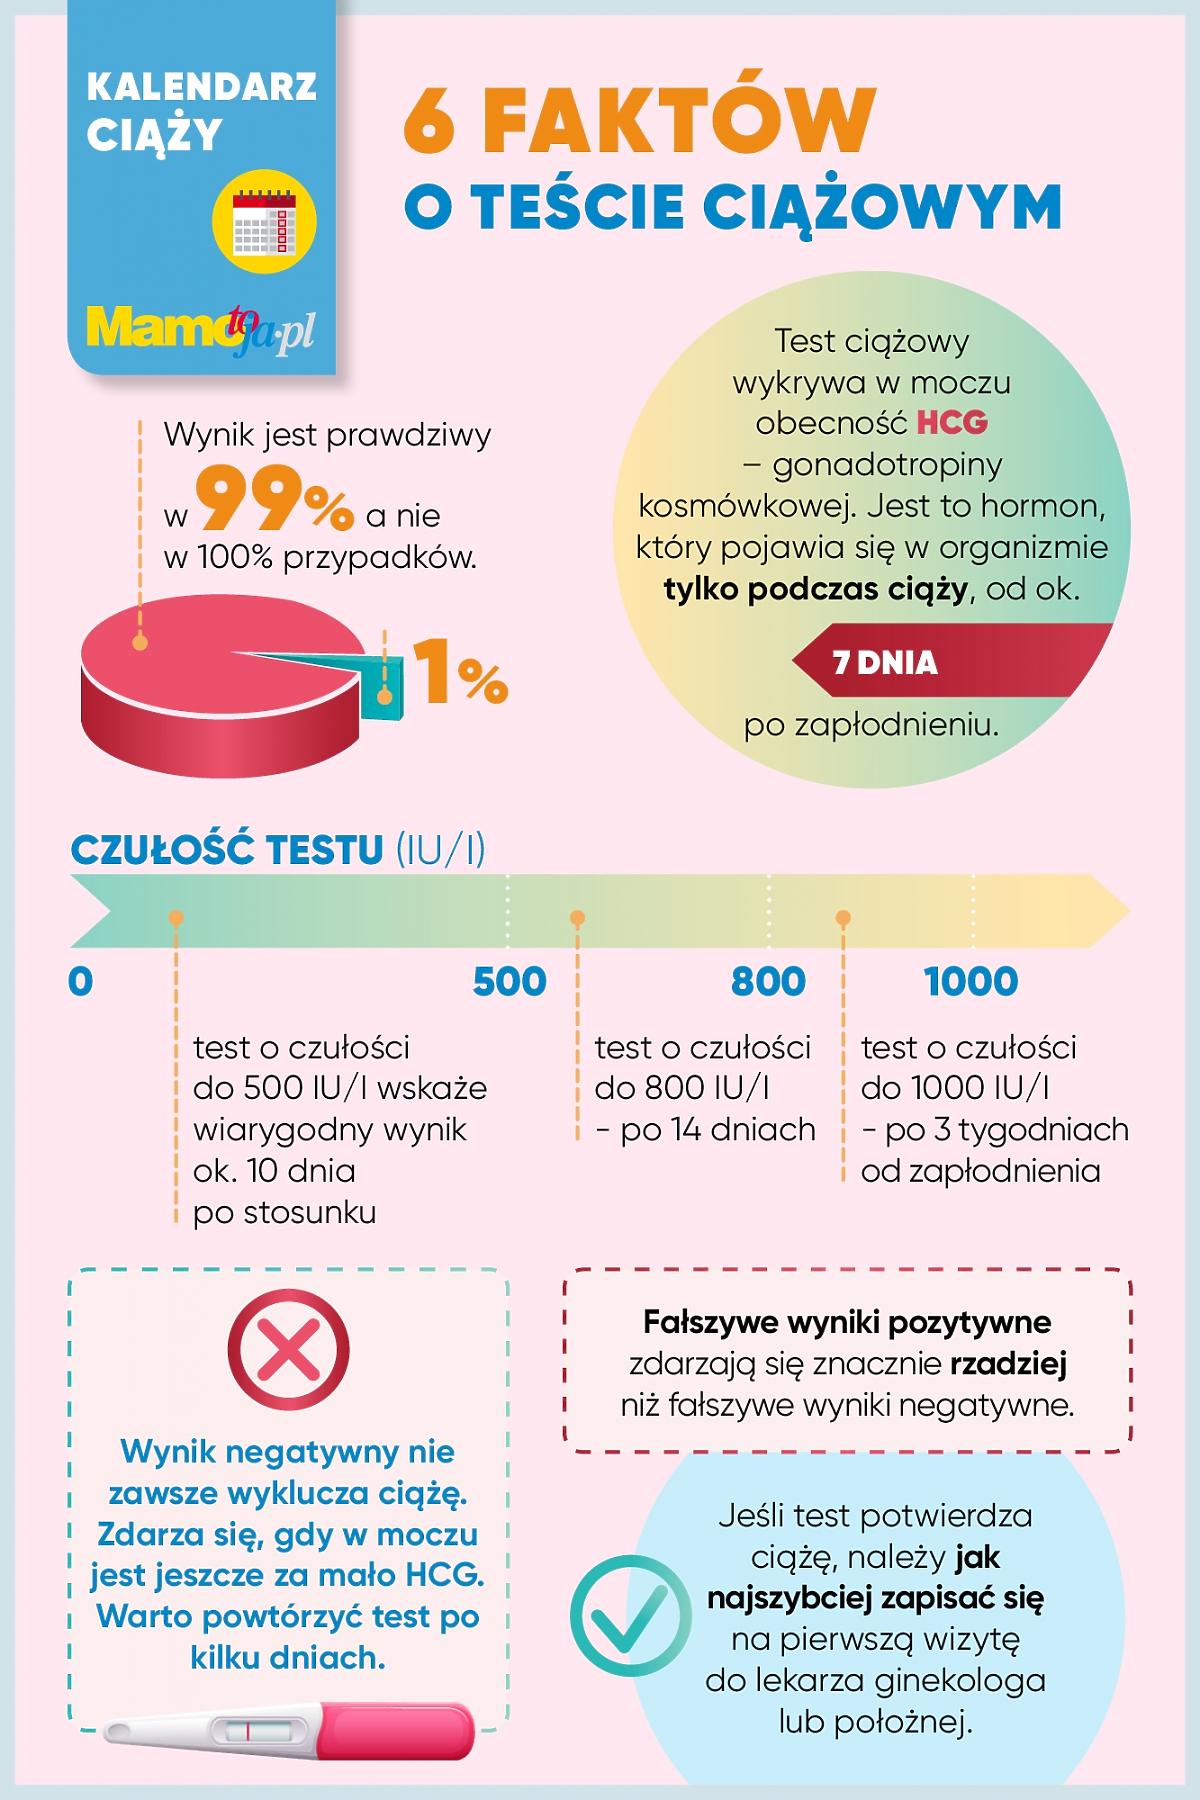 6 faktów o teście ciążowym - infografika